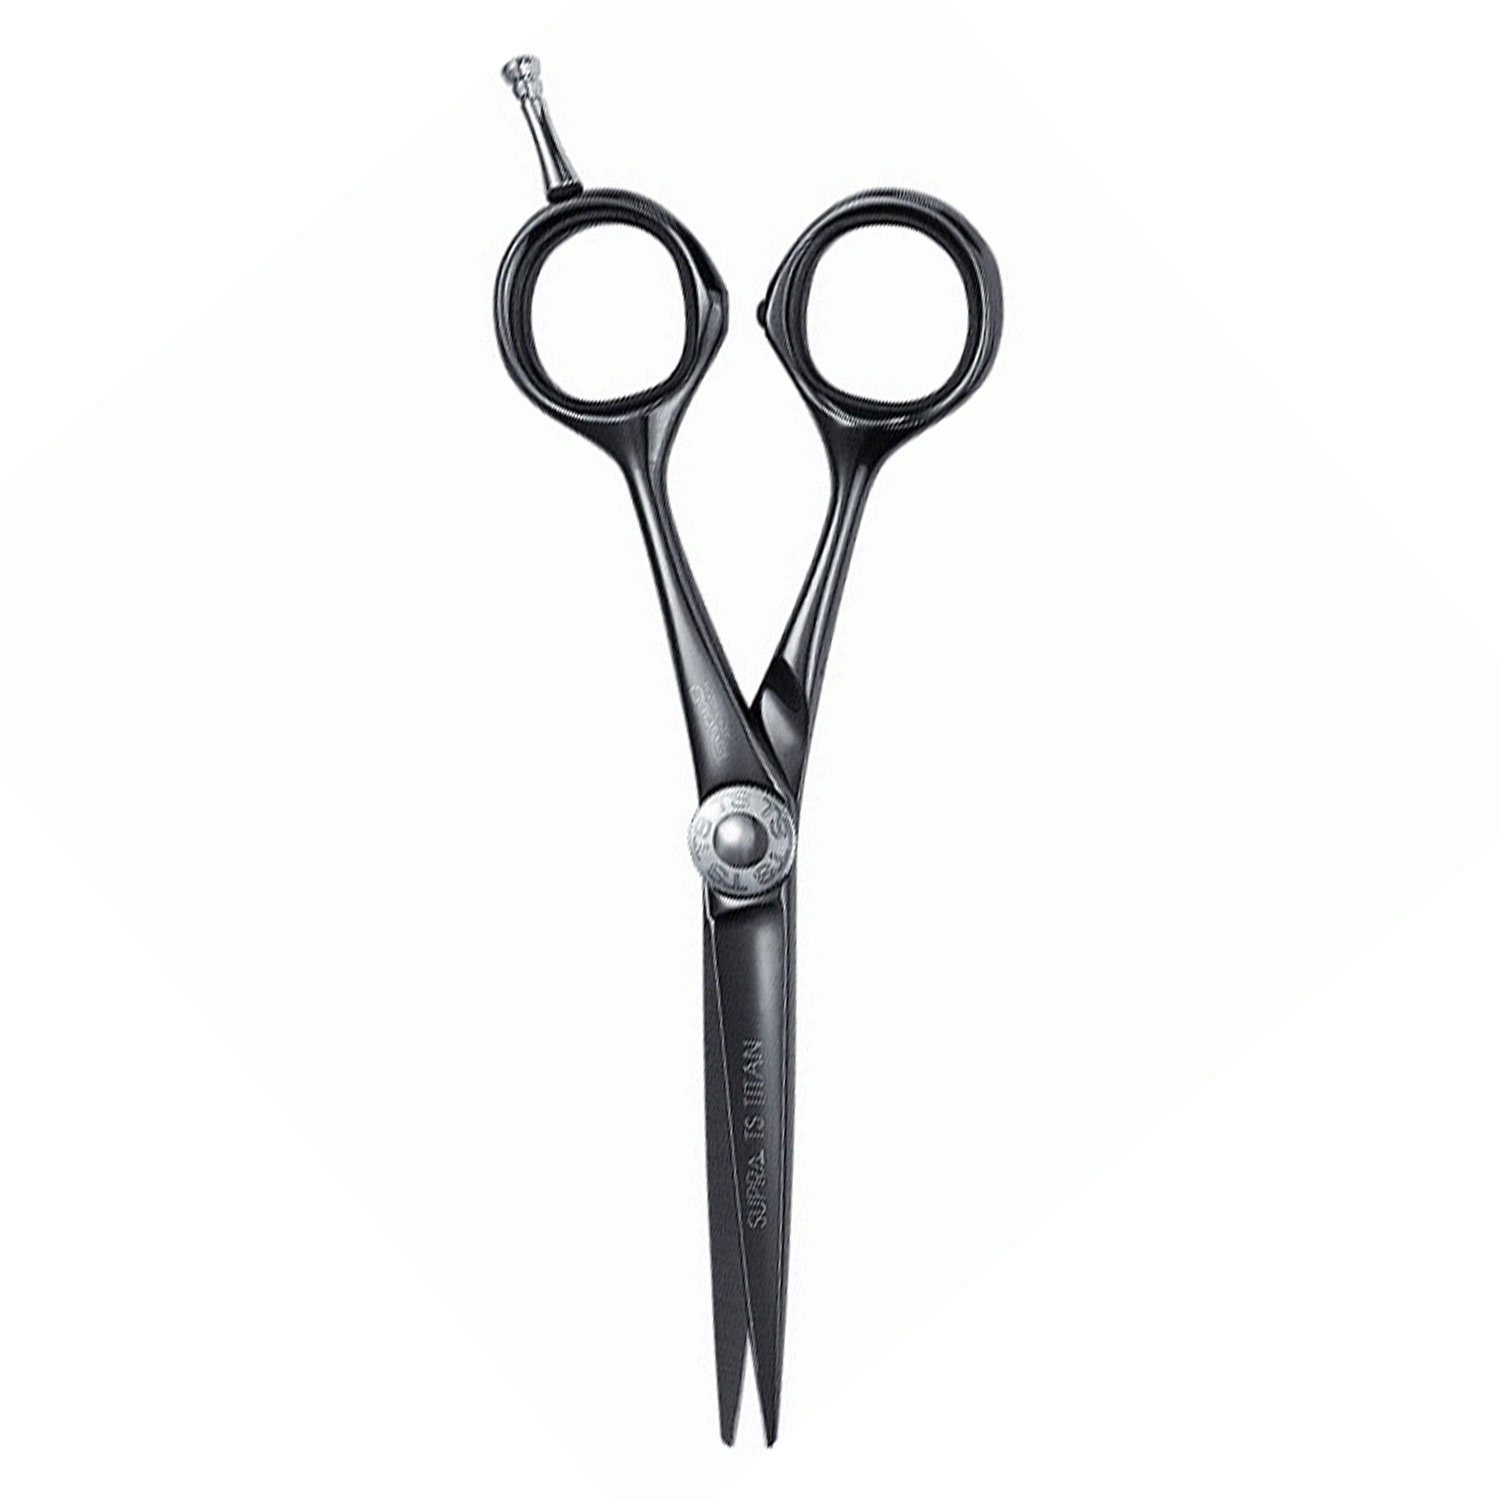 Produktbild von Tondeo Scissors - Supra TS Titan Classic Scissors 5.5"